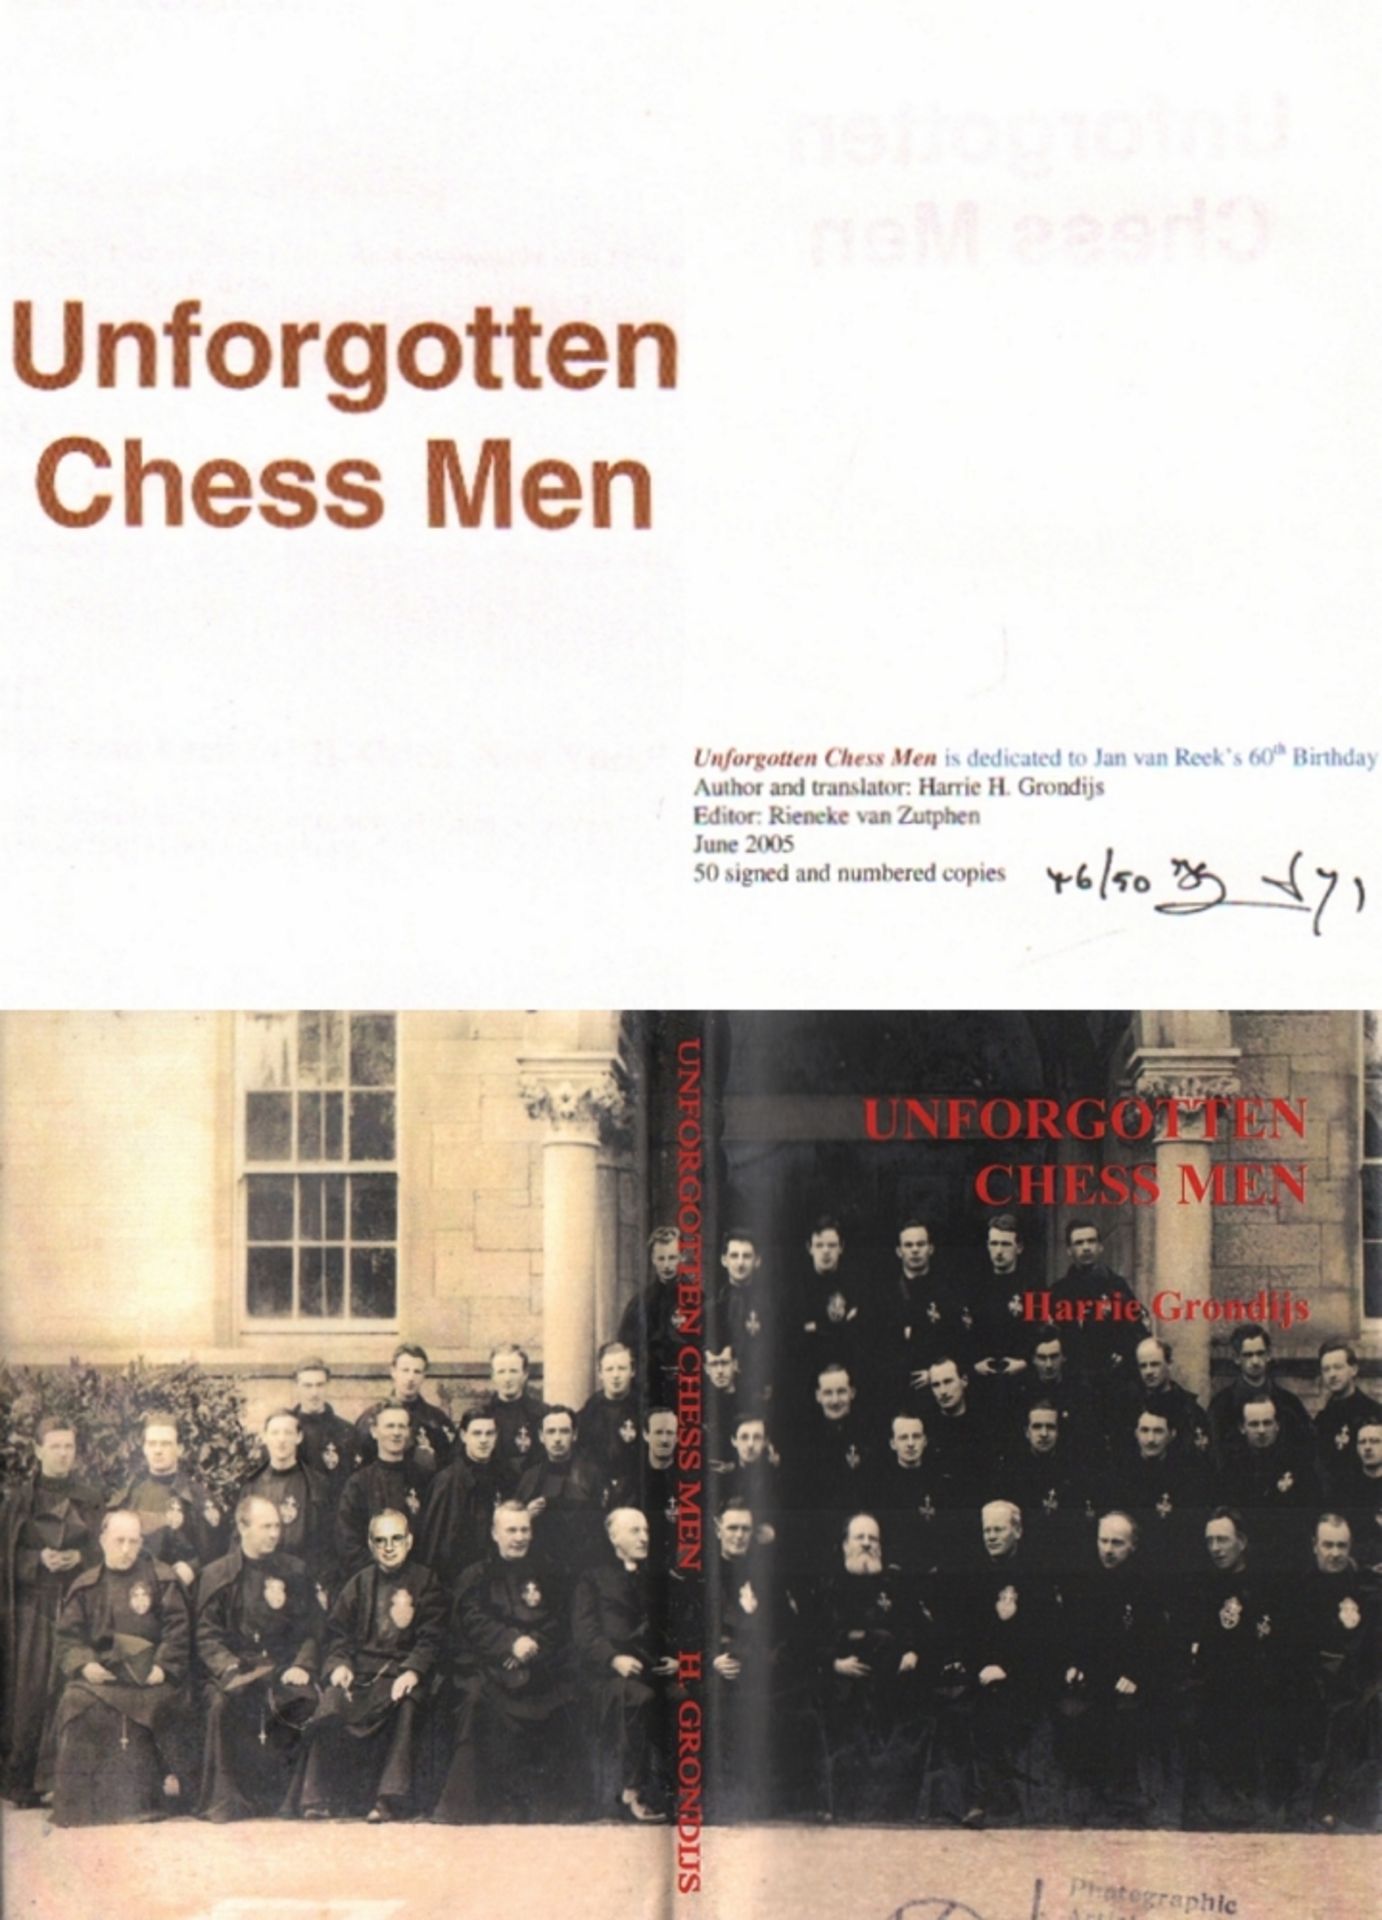 Grondijs, Harrie. Unforgotten Chess Men. Editor: Rieneke van Zutphen. [Rijswijk, Selbstverlag (